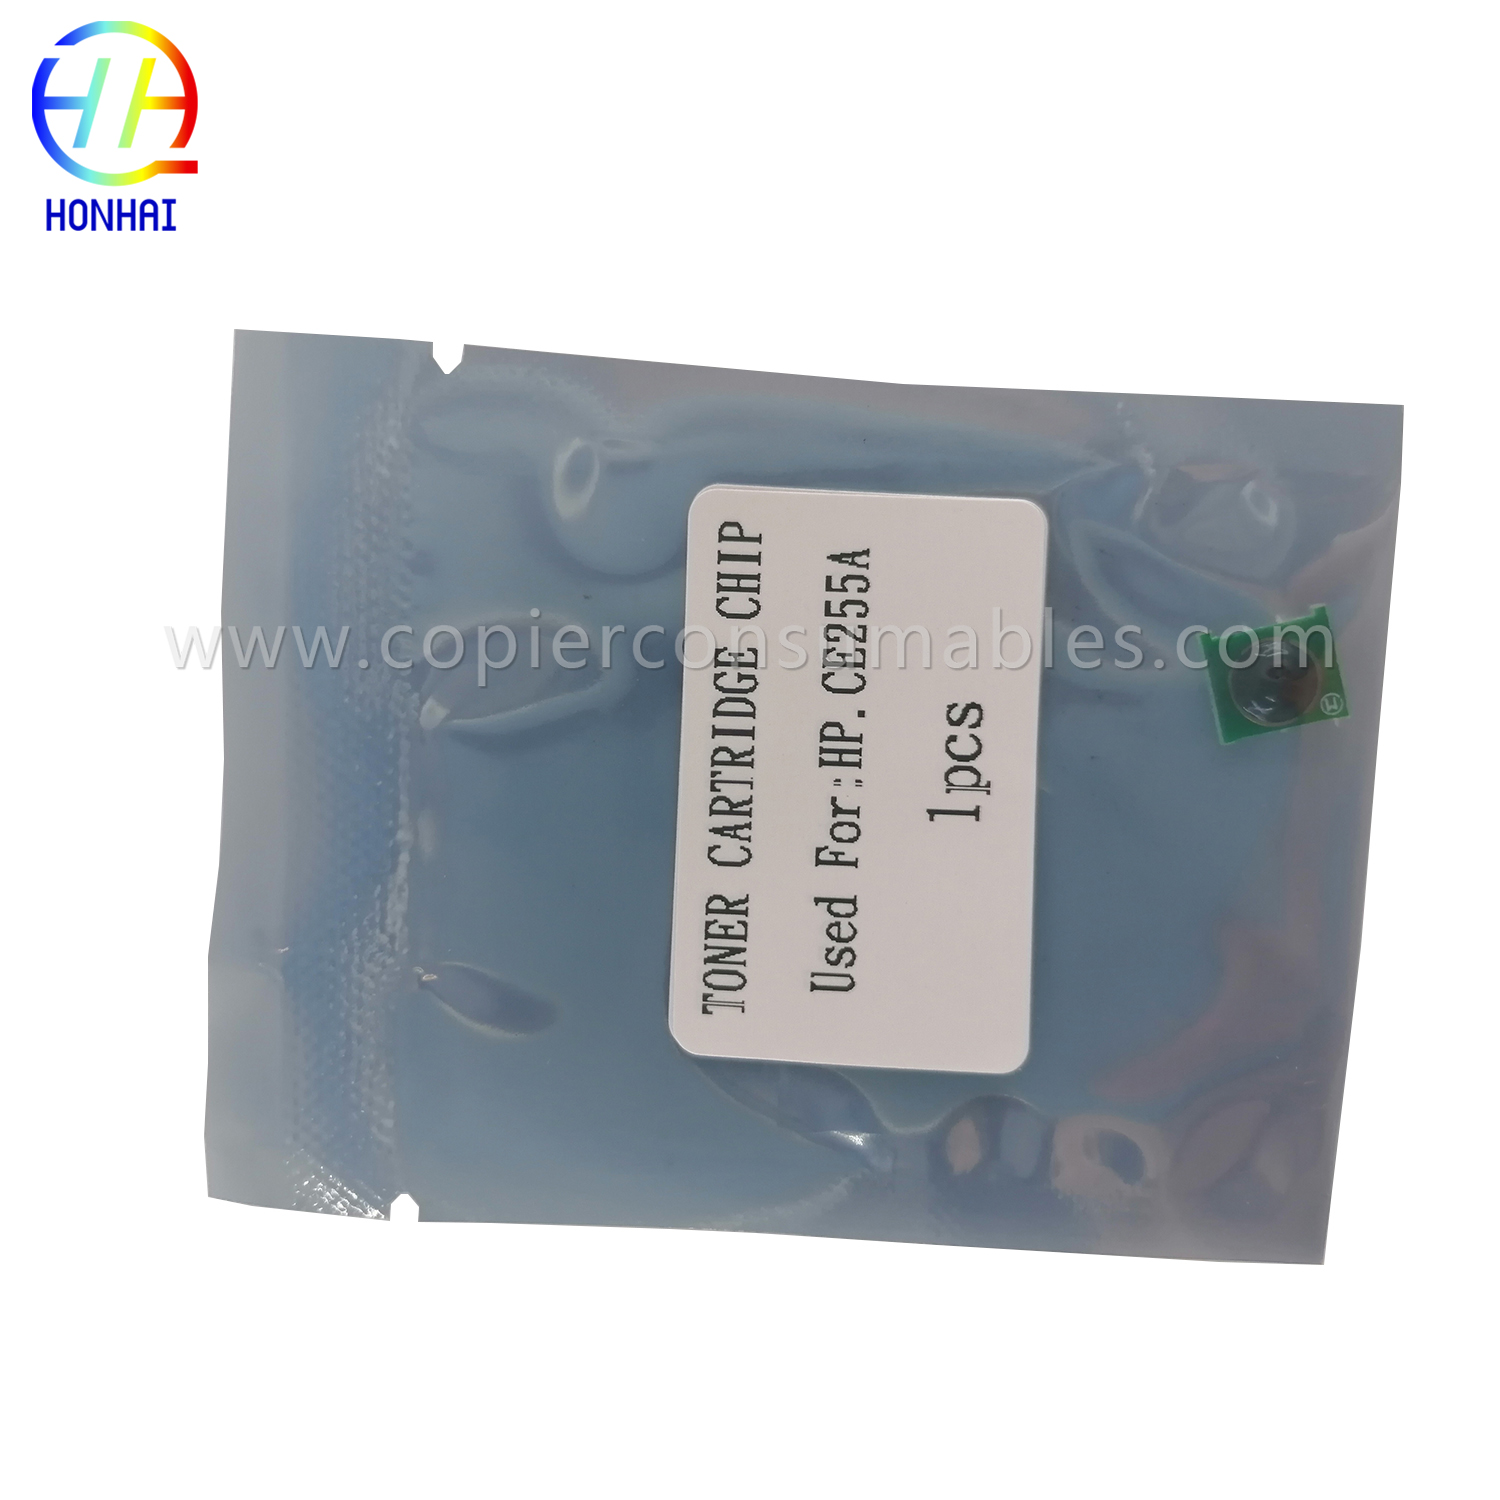 I-Toner Chip HP 3015 CE255A (1) 拷贝